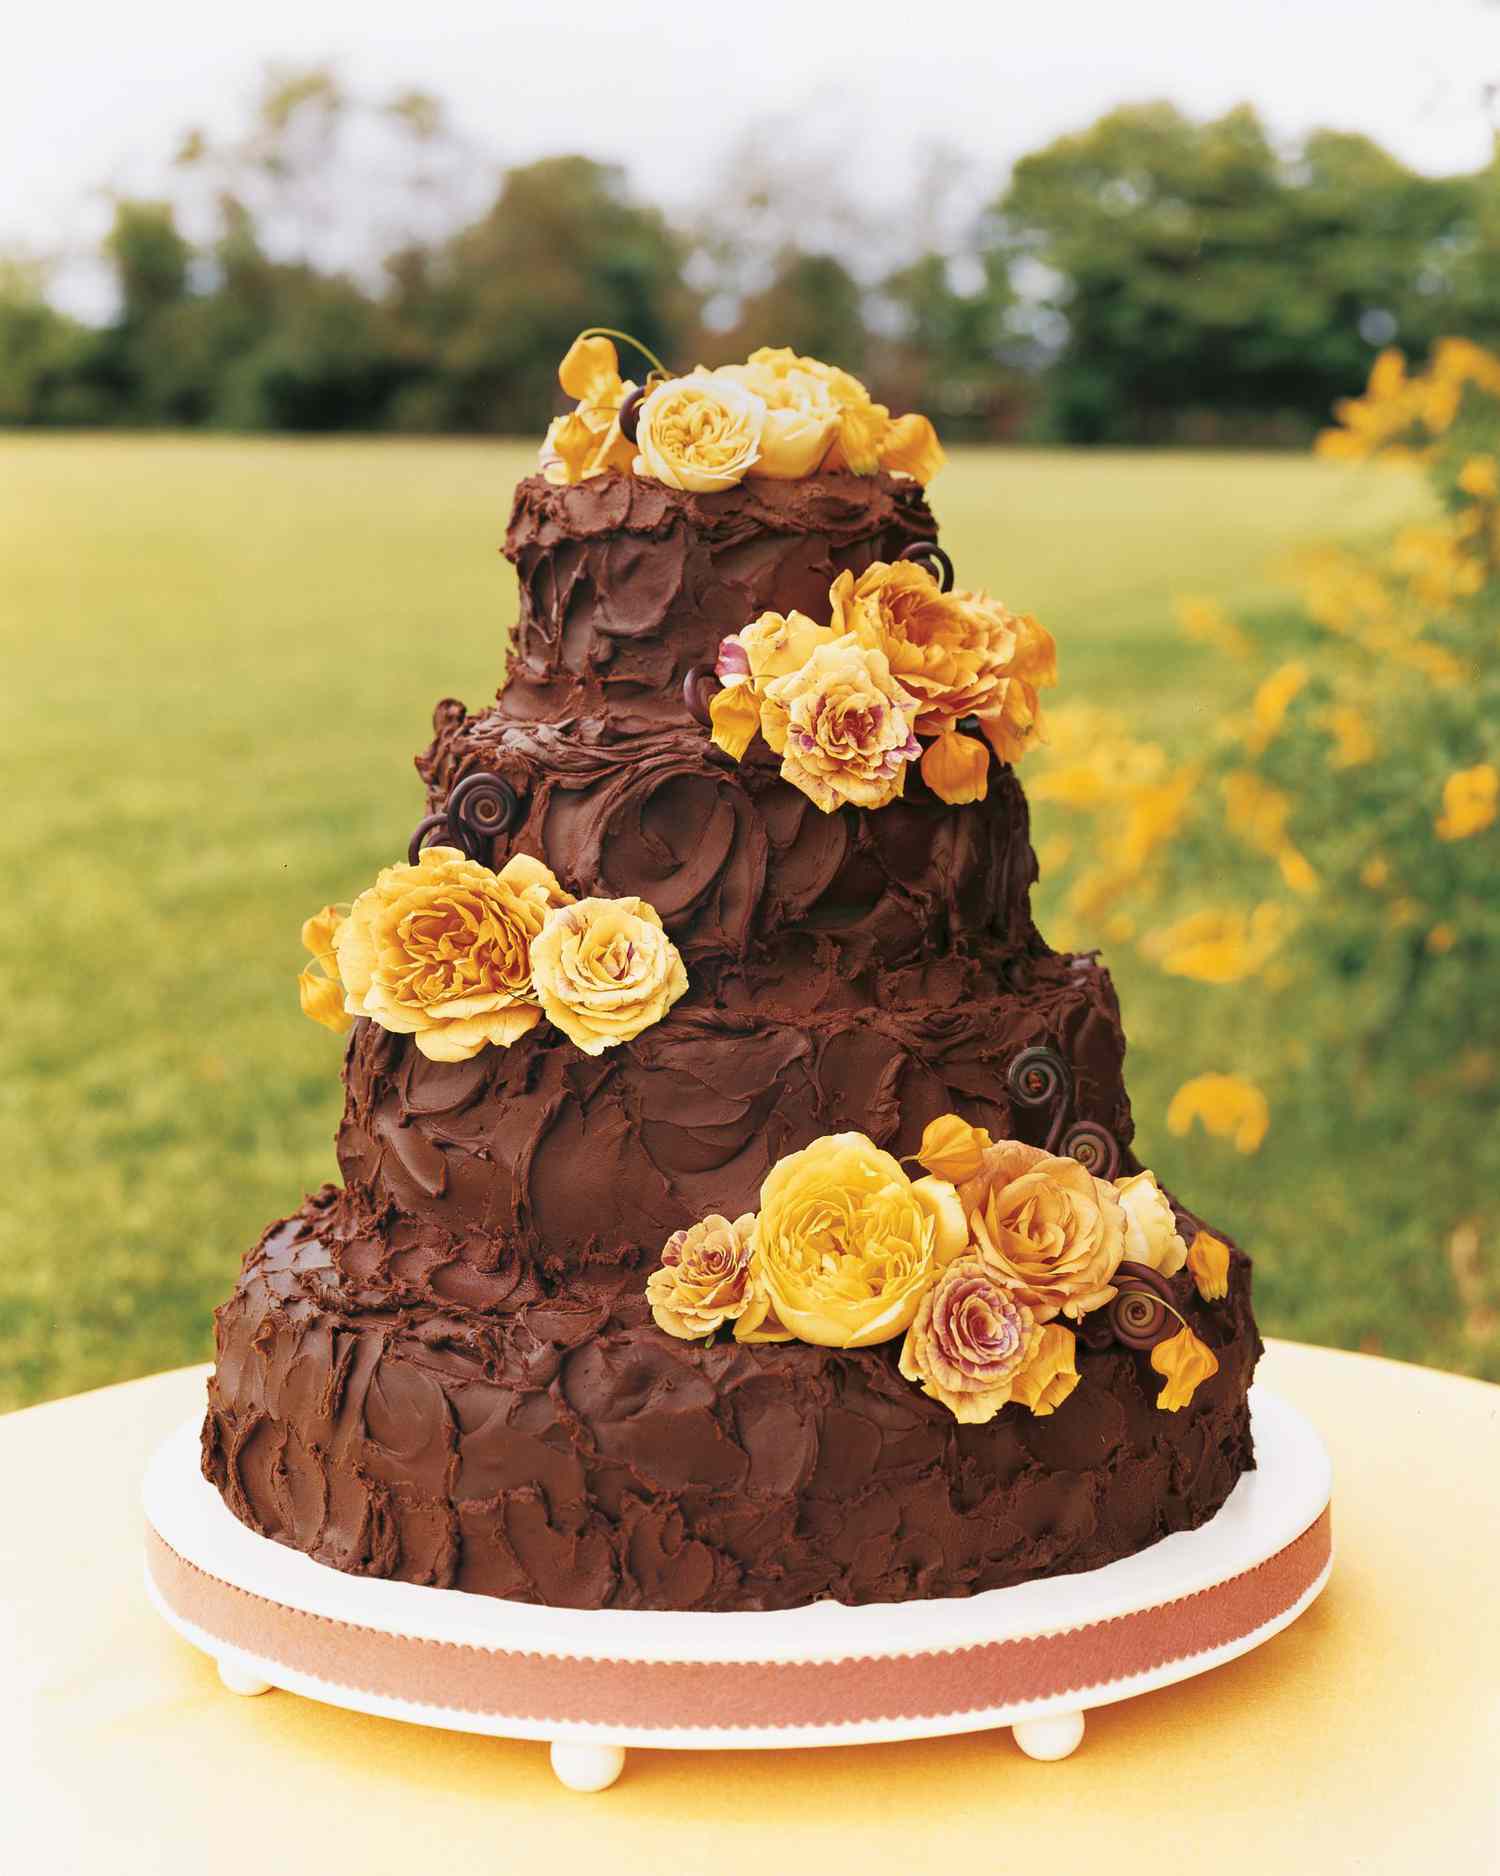 chocolate-cake-ideas-mwa102704cake-yellow-flowers-1114.jpg